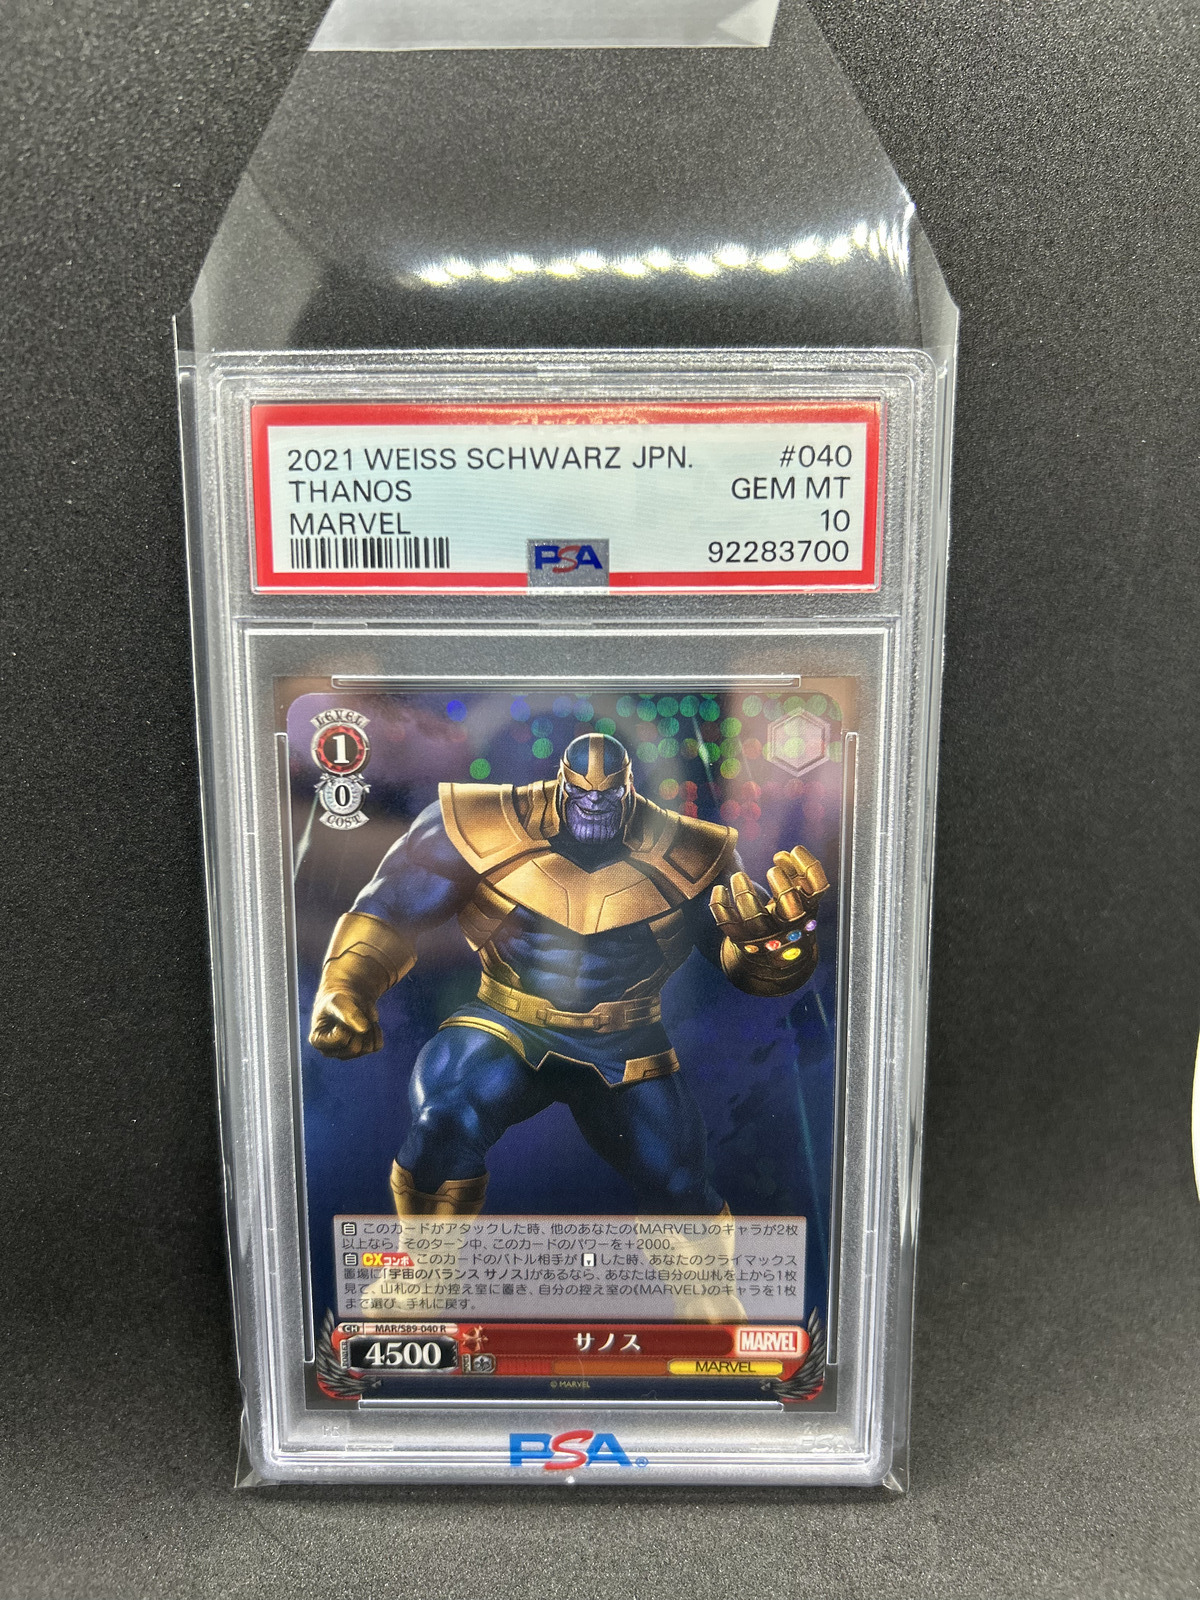 2021 Marvel Weiss Schwarz Japanese Thanos PSA 10 #40